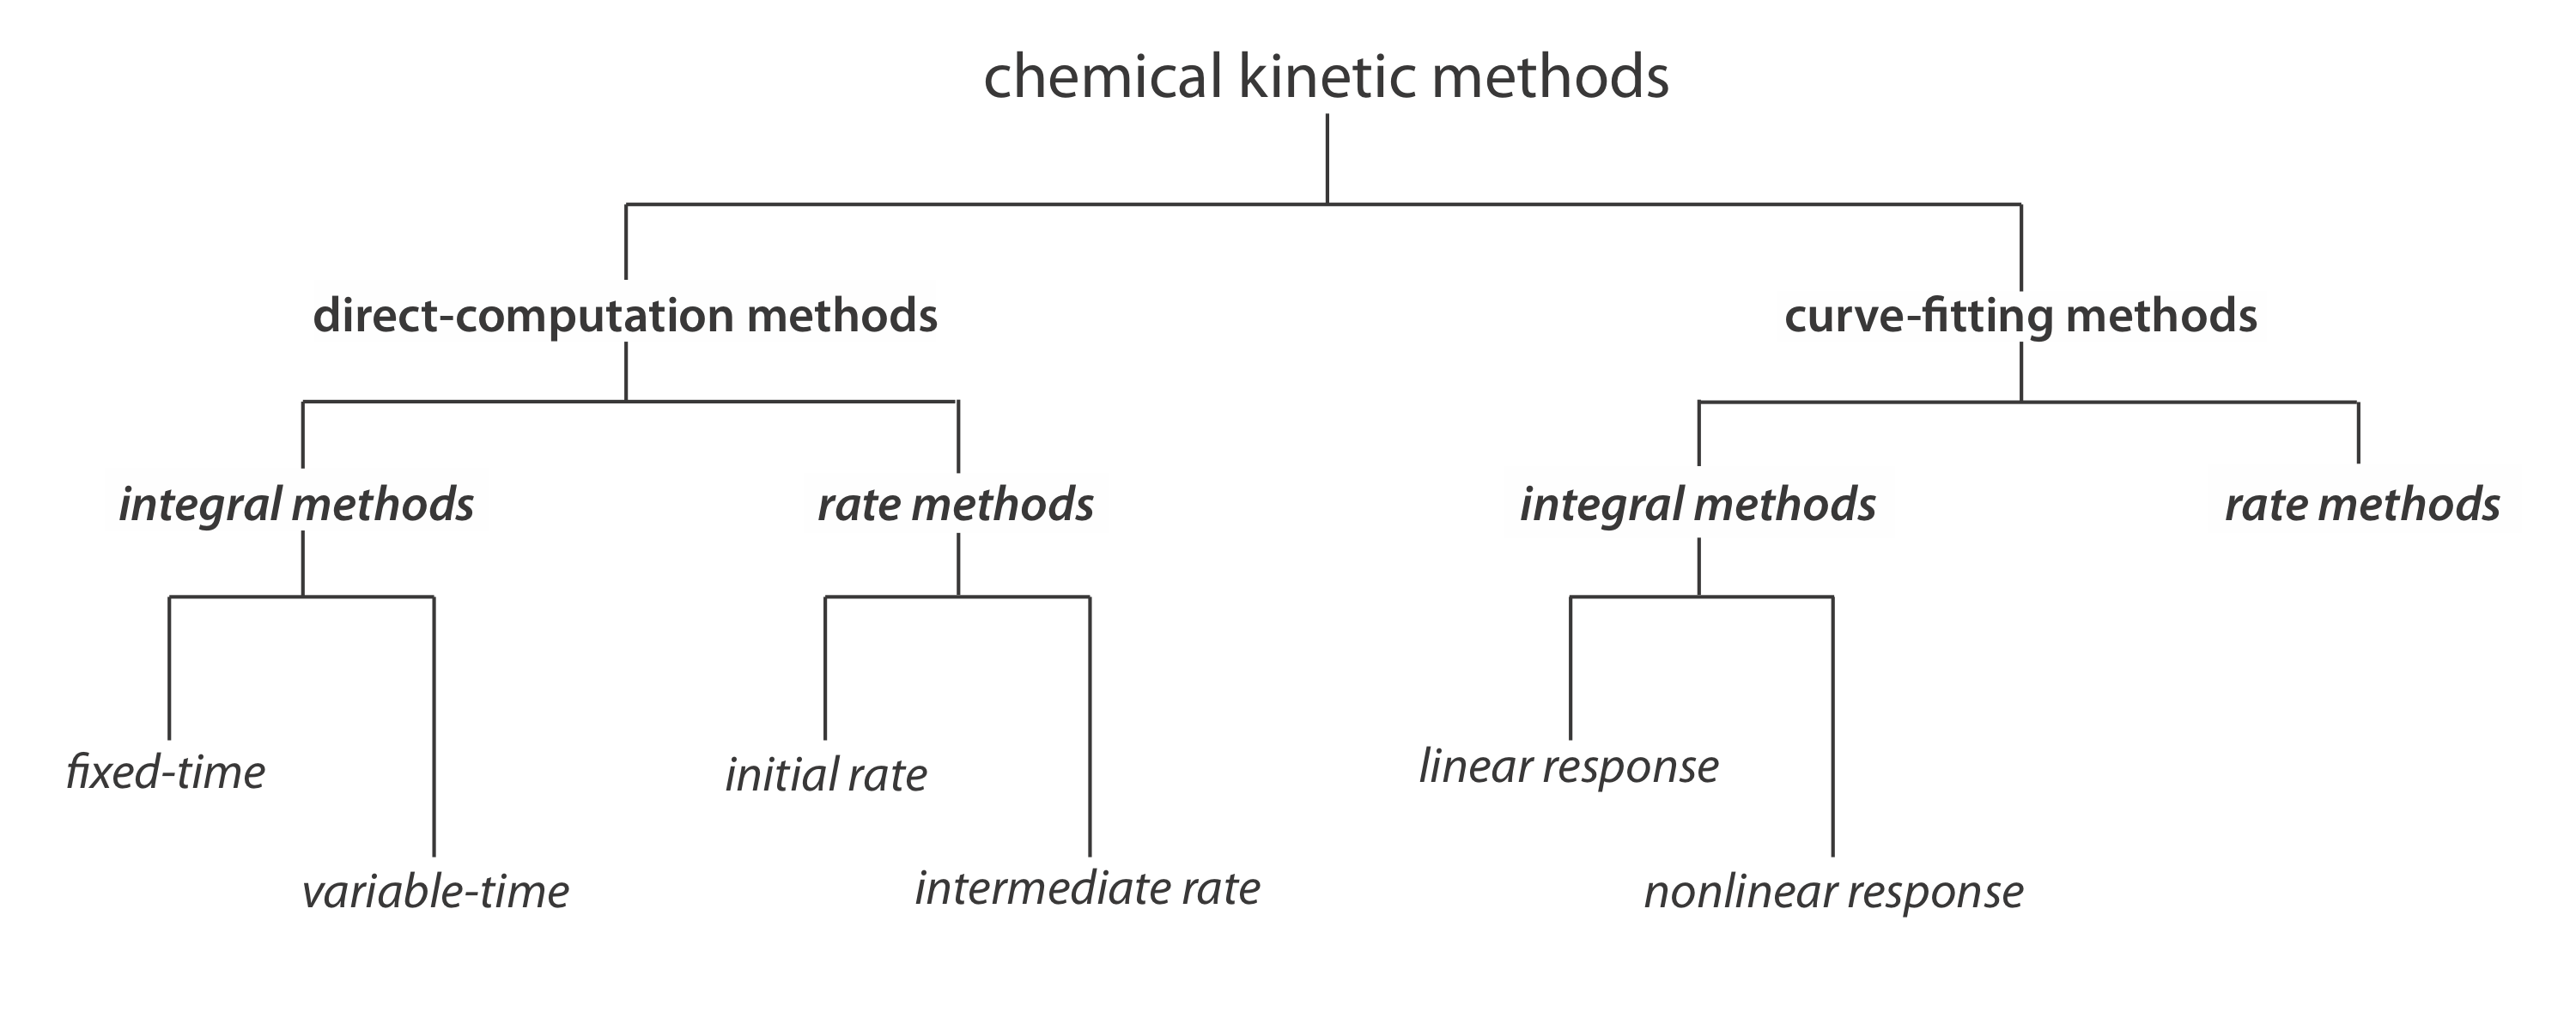 Los métodos cinéticos químicos se dividen en dos ramas iniciales: cálculo directo y ajuste de curvas. El cálculo directo se divide en métodos integrales y métodos de tasa. Integral incluye tiempo fijo y tiempo variable. Los métodos de tasa incluyen tasa inicial y tasa inmediata. El ajuste de curva también se divide en métodos de tasa (que no tiene subramas) y métodos integrales que incluyen respuestas lineales y no lineales.